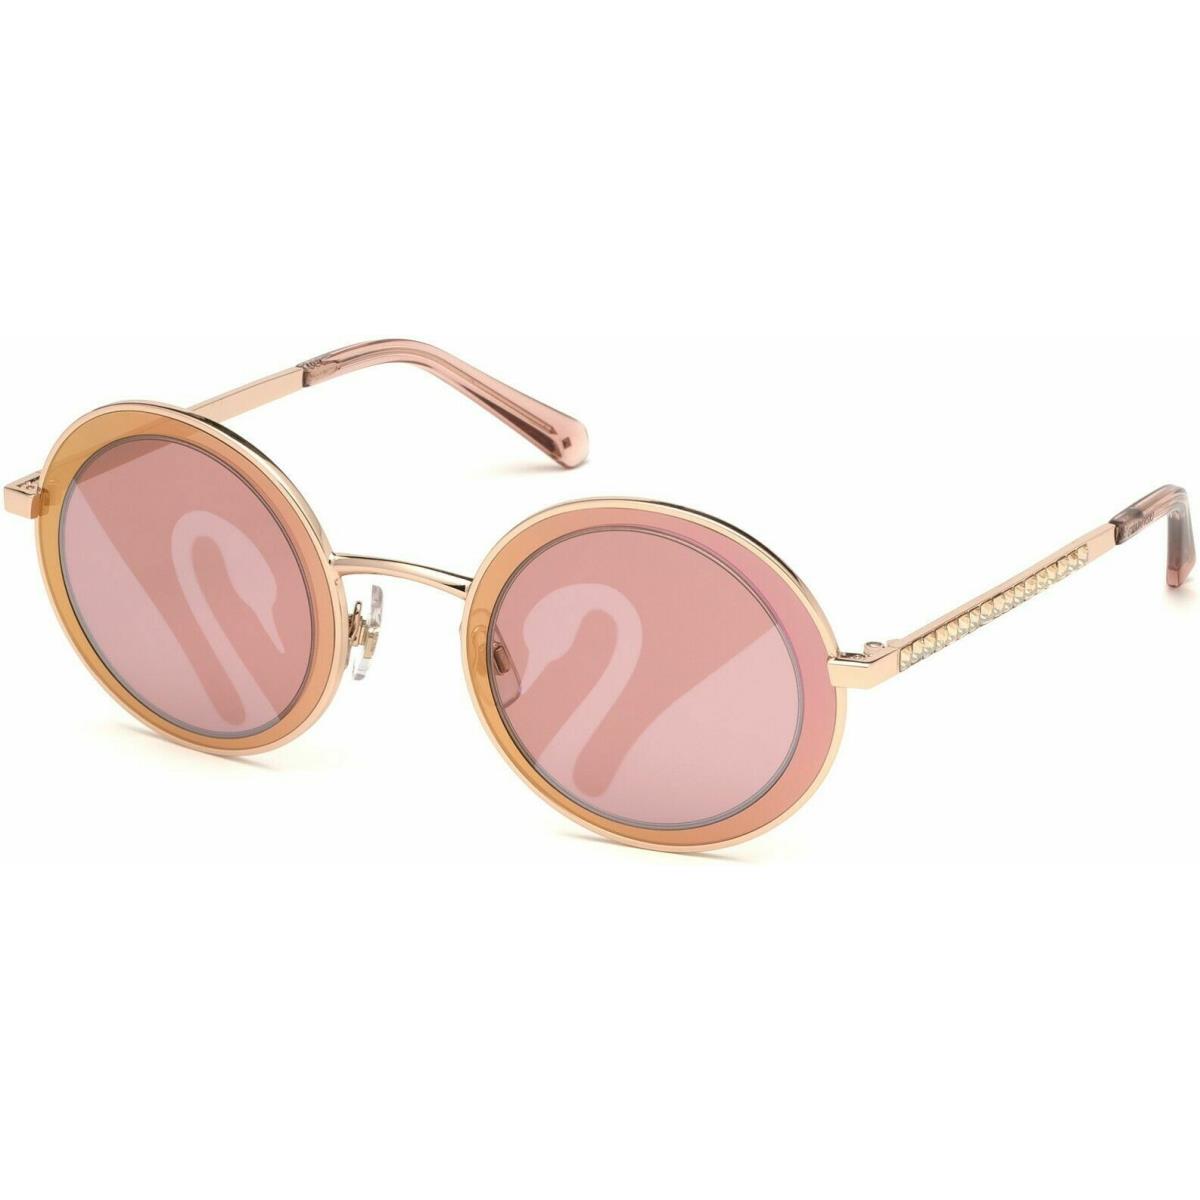 Swarovski Sunglasses SK 0199 c.28S in Shiny Rose Gold with Bordeaux Lenses